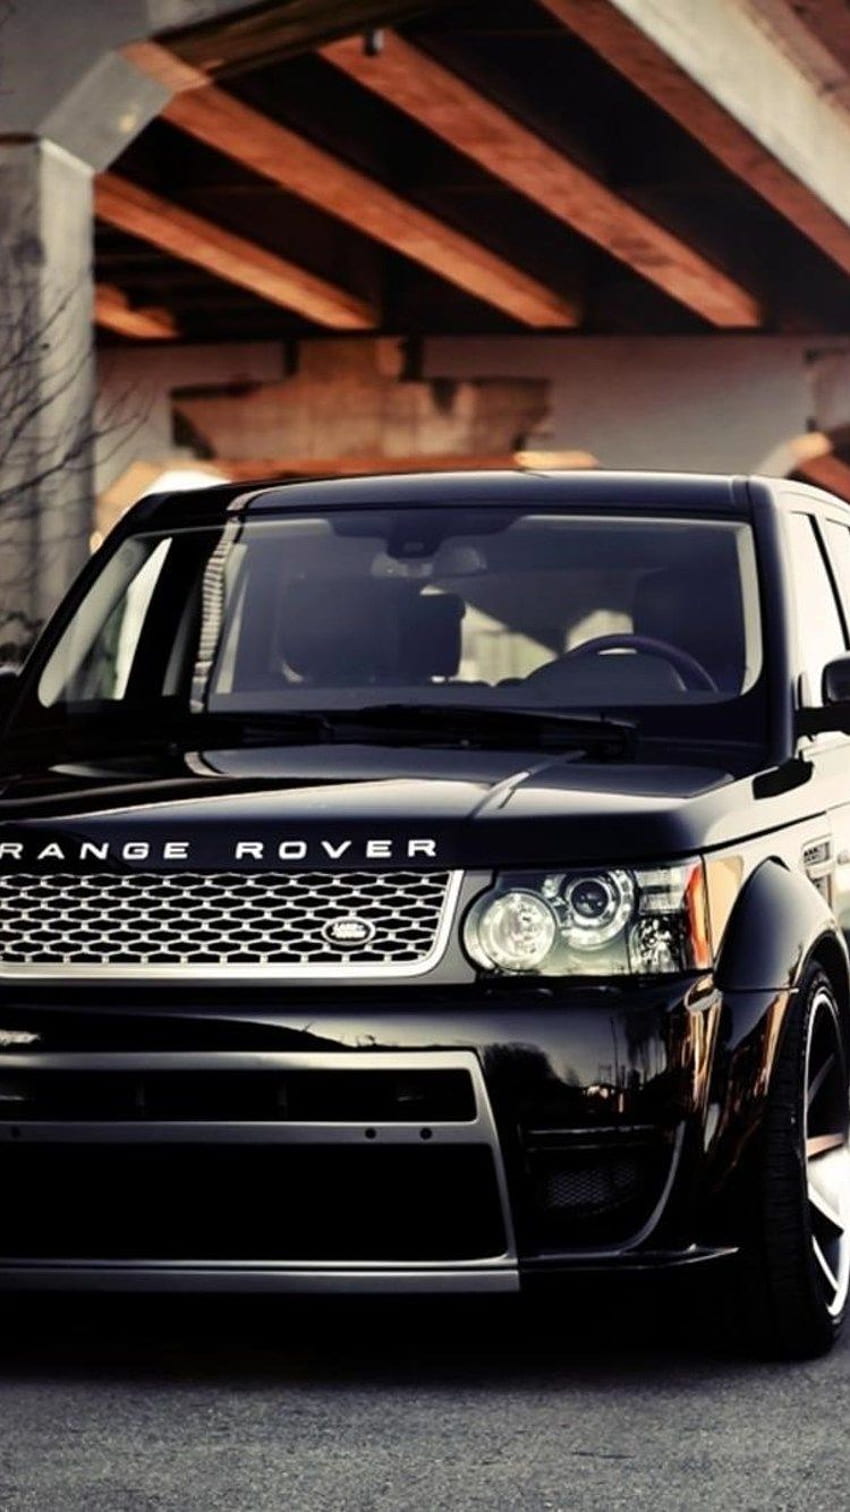 Range Rover para móviles - Range Rover Sports 2018 fondo de pantalla del teléfono